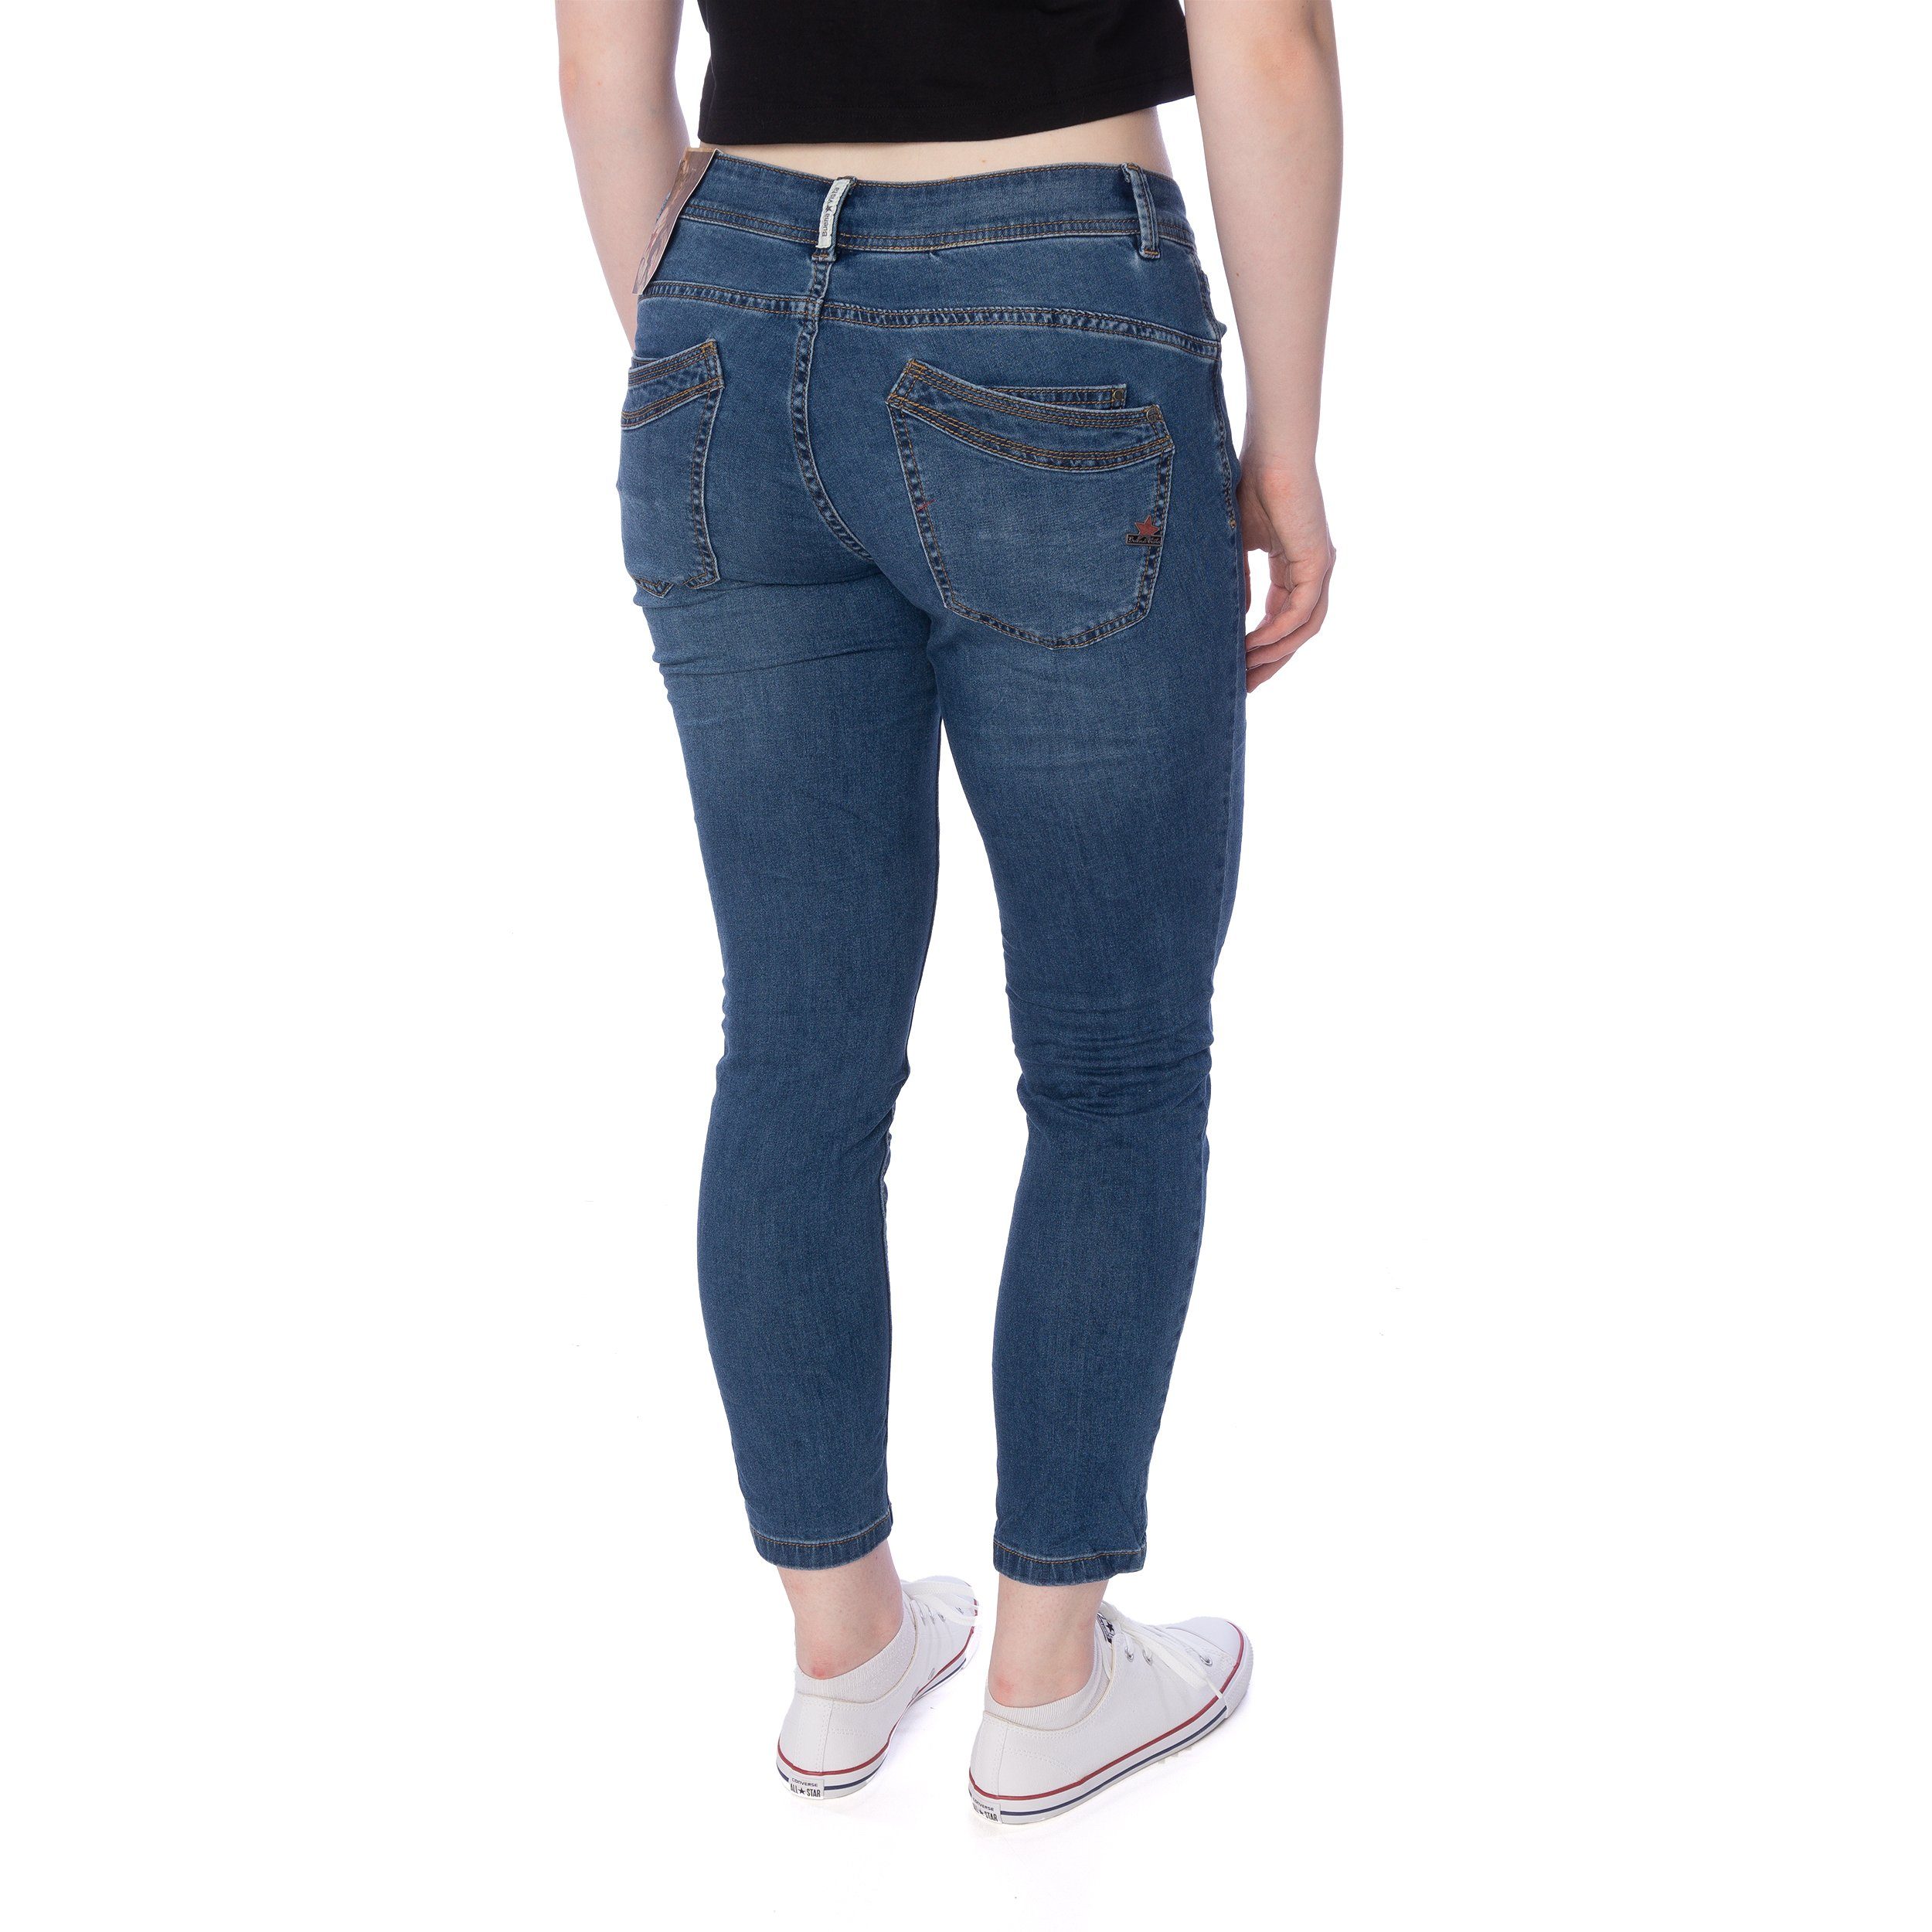 Buena Vista Slim-fit-Jeans Buena Vista 7/8 blau Hose stretch Malibu Damen denim Jeans